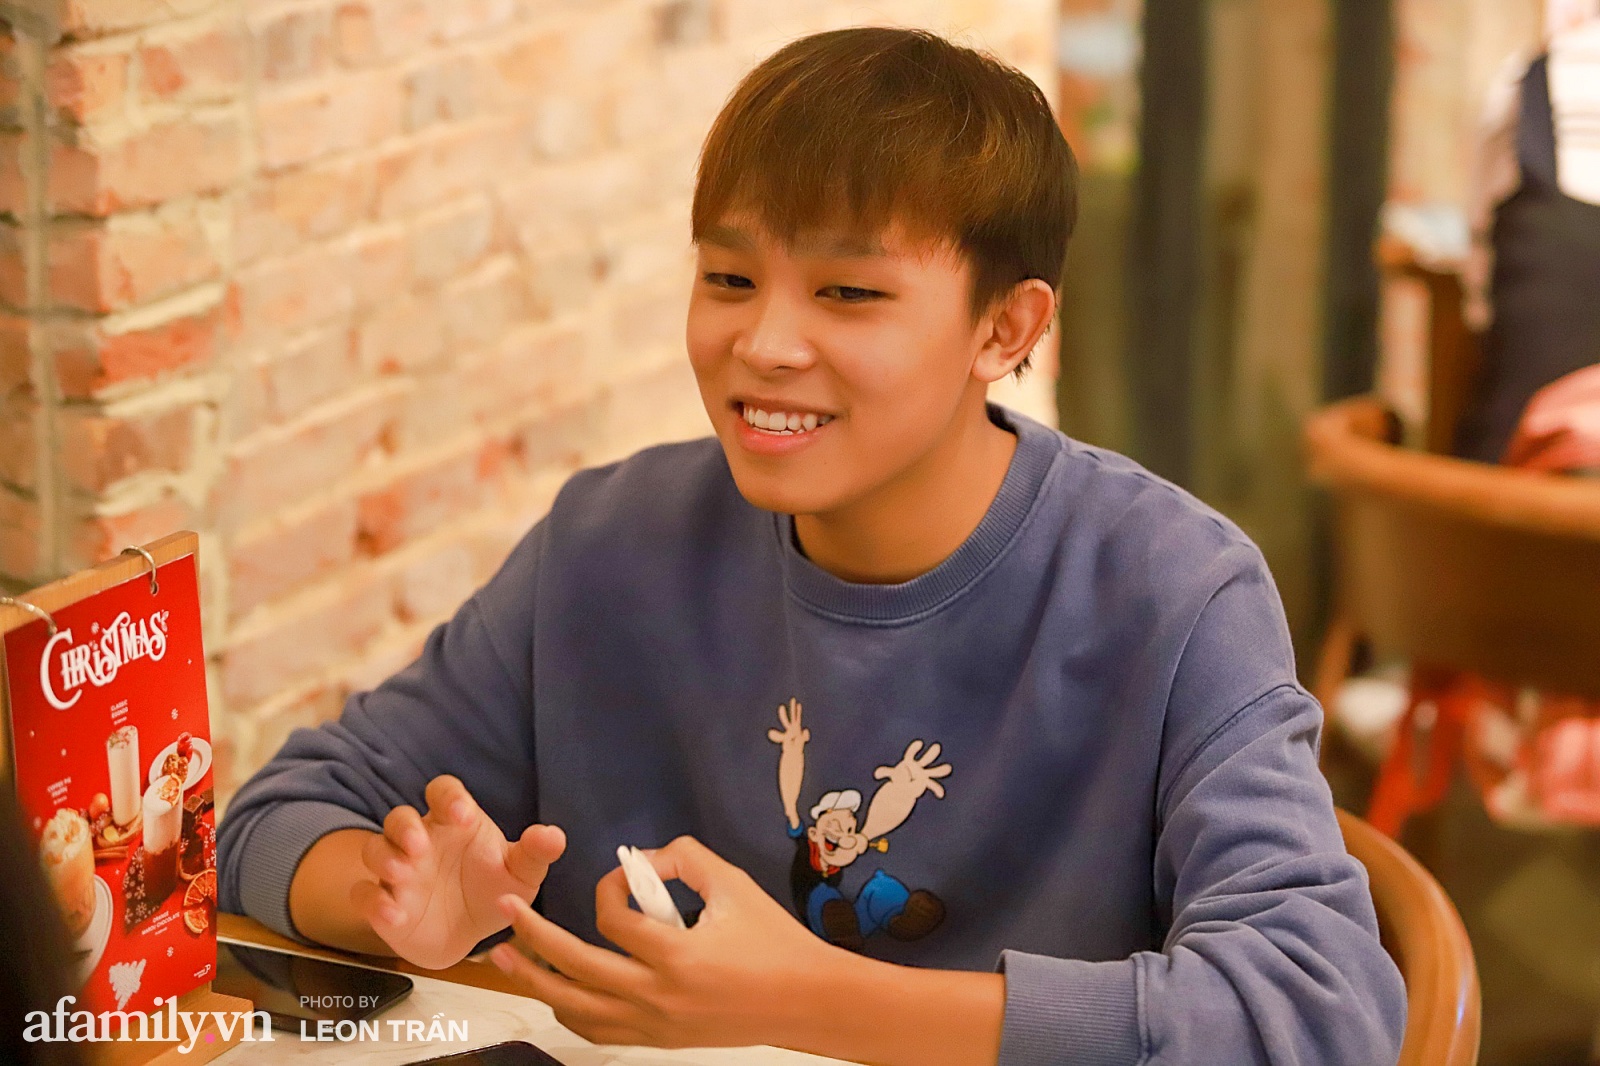 Hồ Văn Cường sau Vietnam Idol Kids: Là chàng trai 18 tuổi, mặc quần áo đẹp, có tài khoản riêng và mong ước mua nhà cho ba mẹ  - Ảnh 7.